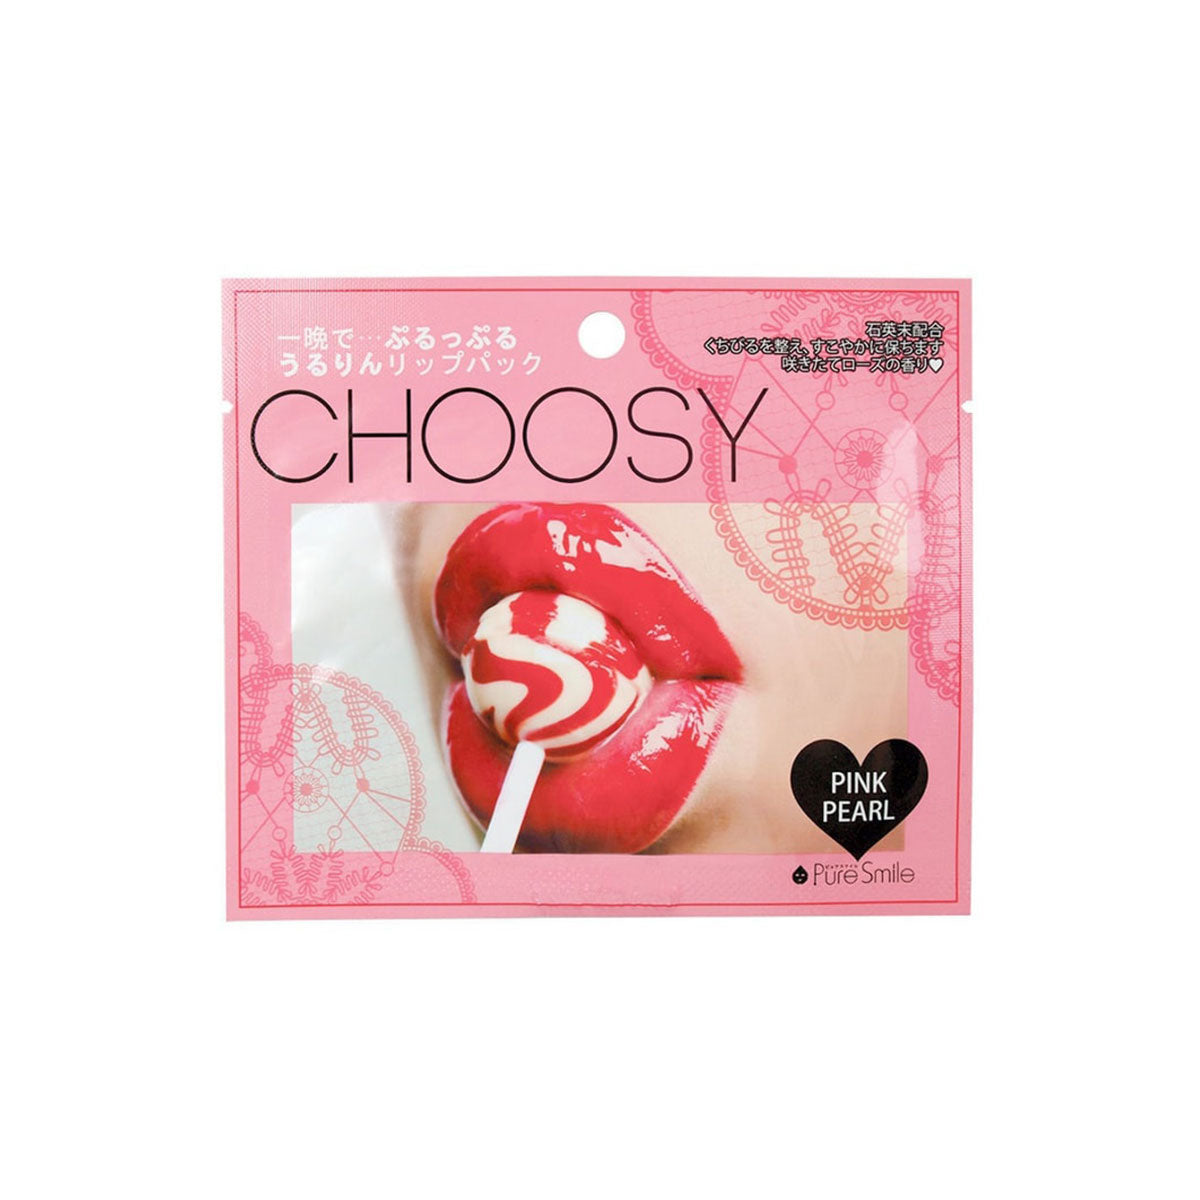 日本CHOOSY微笑唇部护理面膜 #粉珍珠1片装